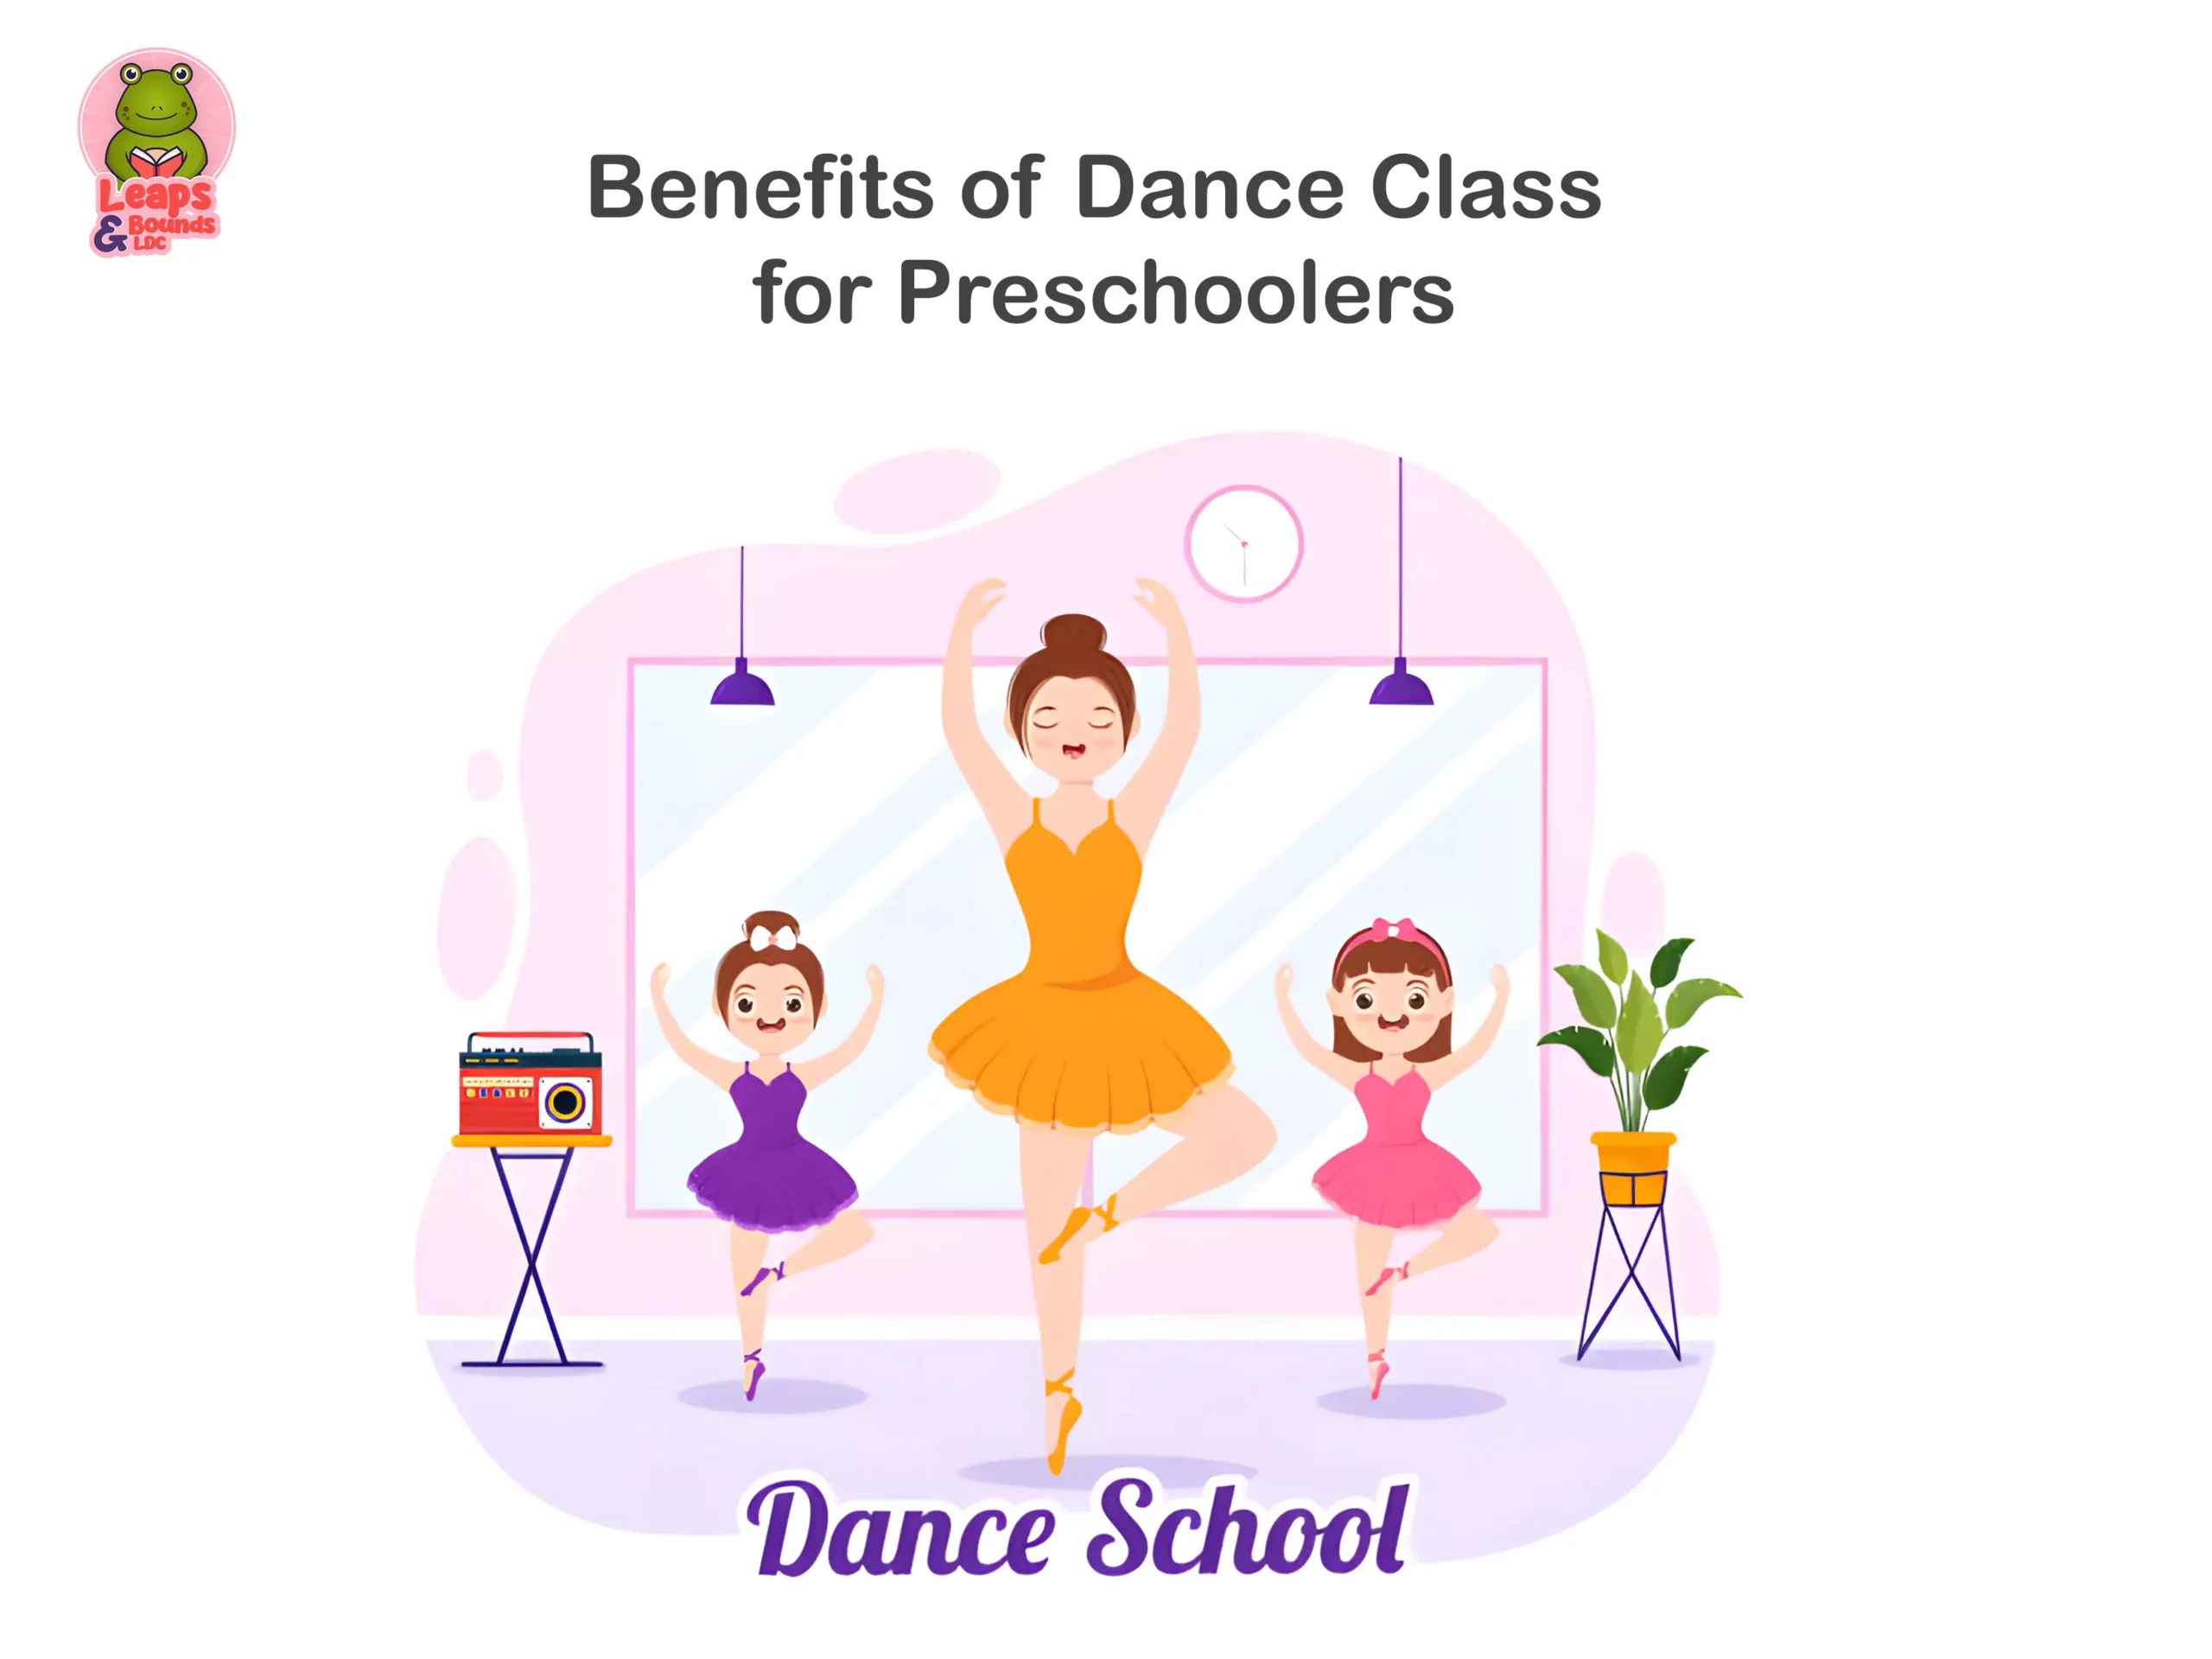 Benefits of Dance Class for Preschoolers